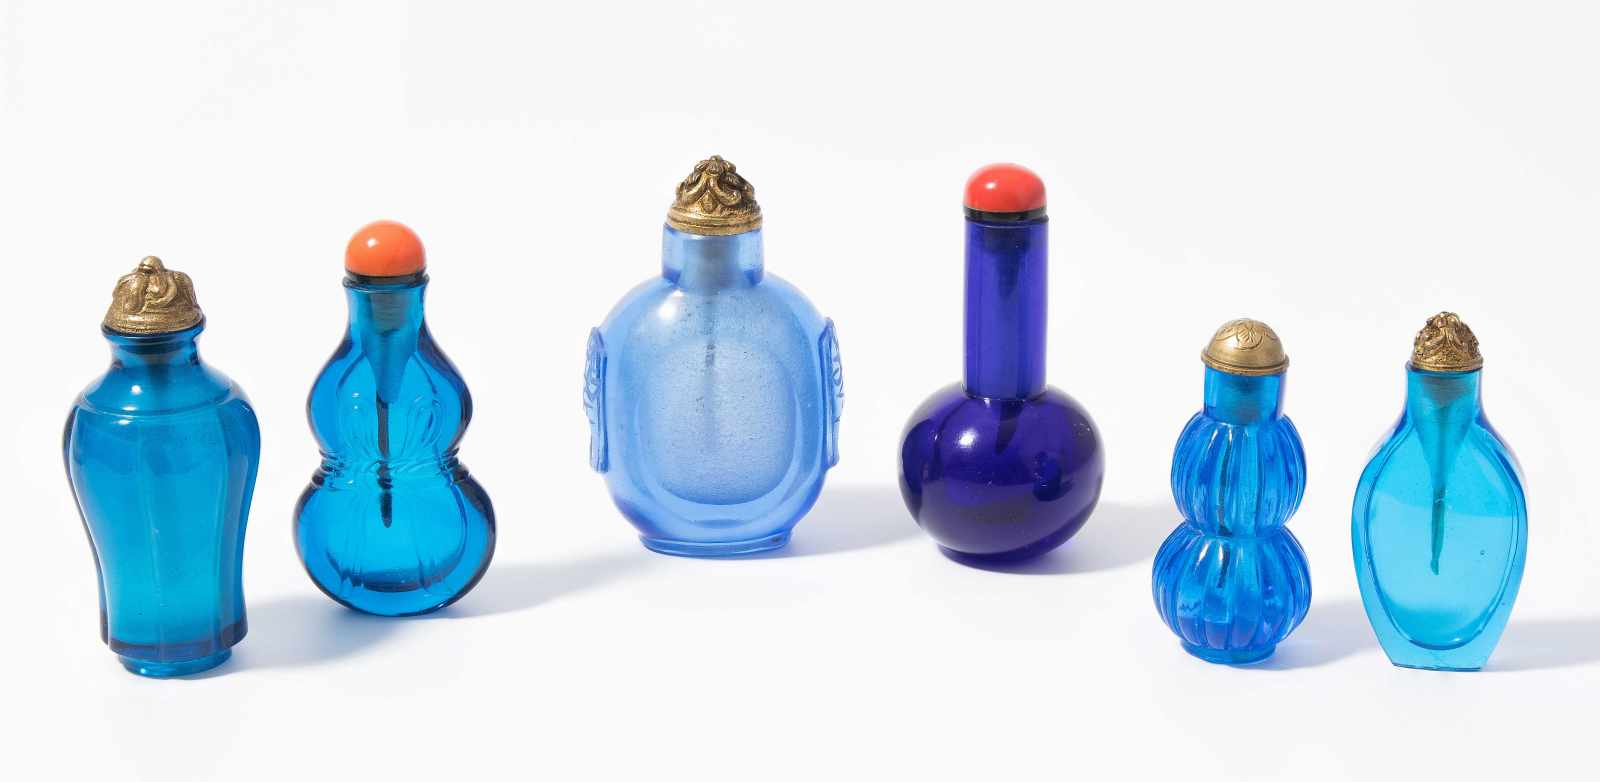 6 Glas Snuff BottlesChina. Transparentes Glas in verschiedenen Blautönen. Ein Snuff Bottle mit